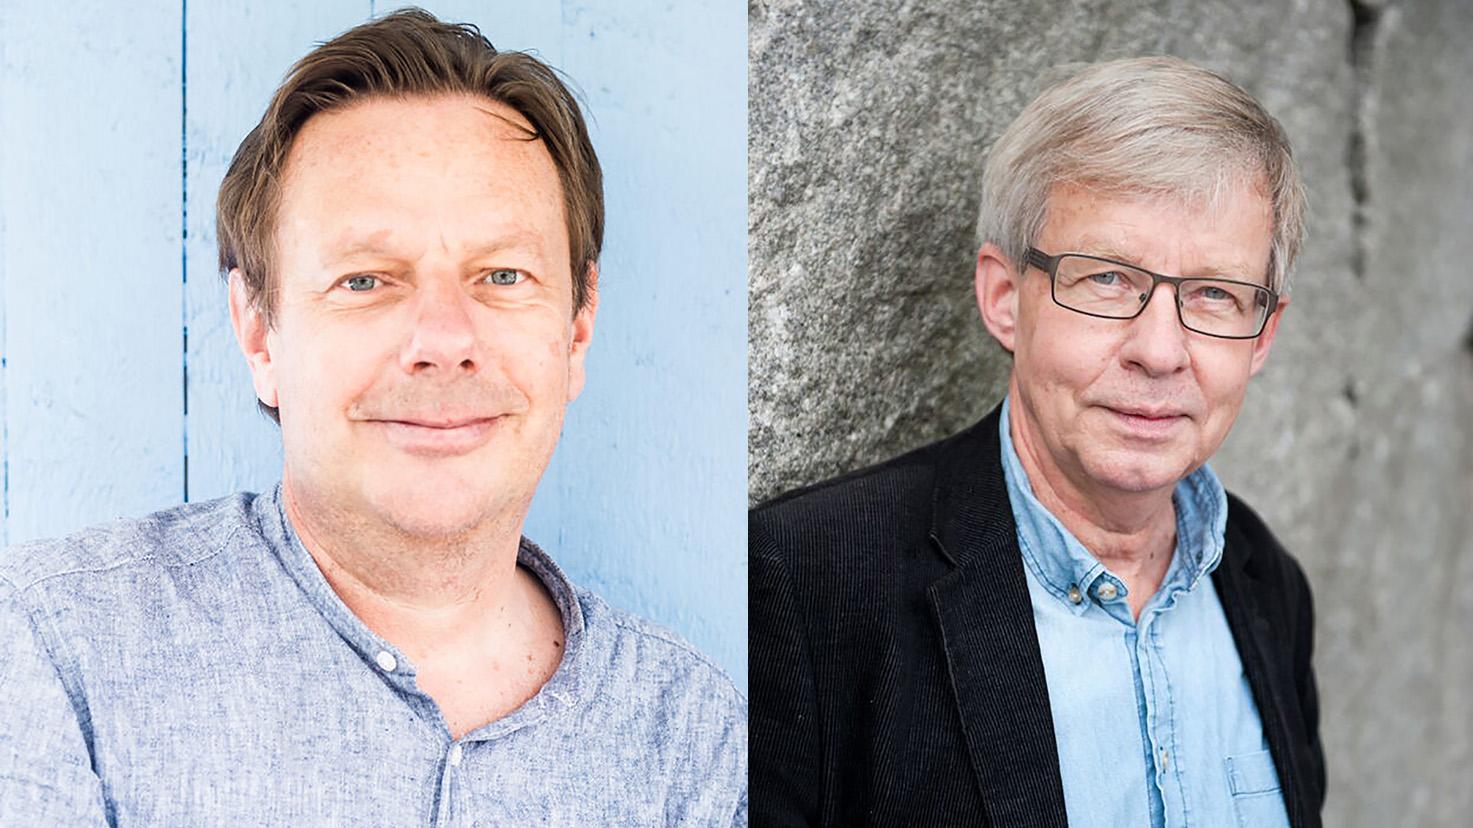 Folke Tersman och Torbjörn Tännsjö, professorer i praktisk filosofi, har utkommit med debattboken ”Folk & Vilja”.